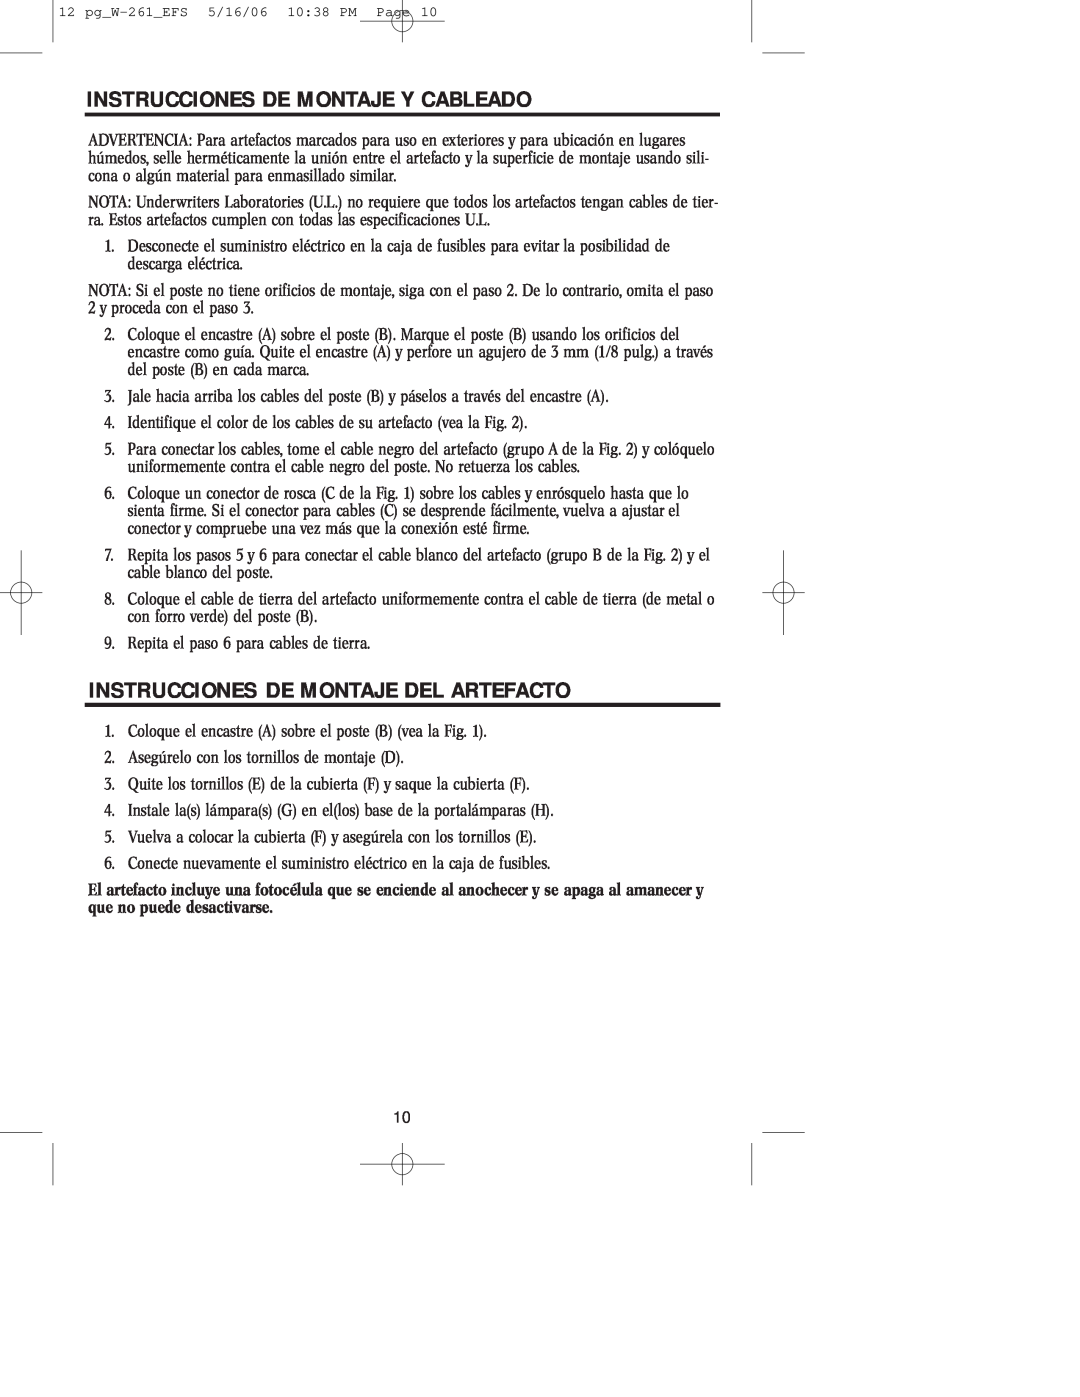 Westinghouse W-261 owner manual Instrucciones De Montaje Y Cableado, Instrucciones De Montaje Del Artefacto 